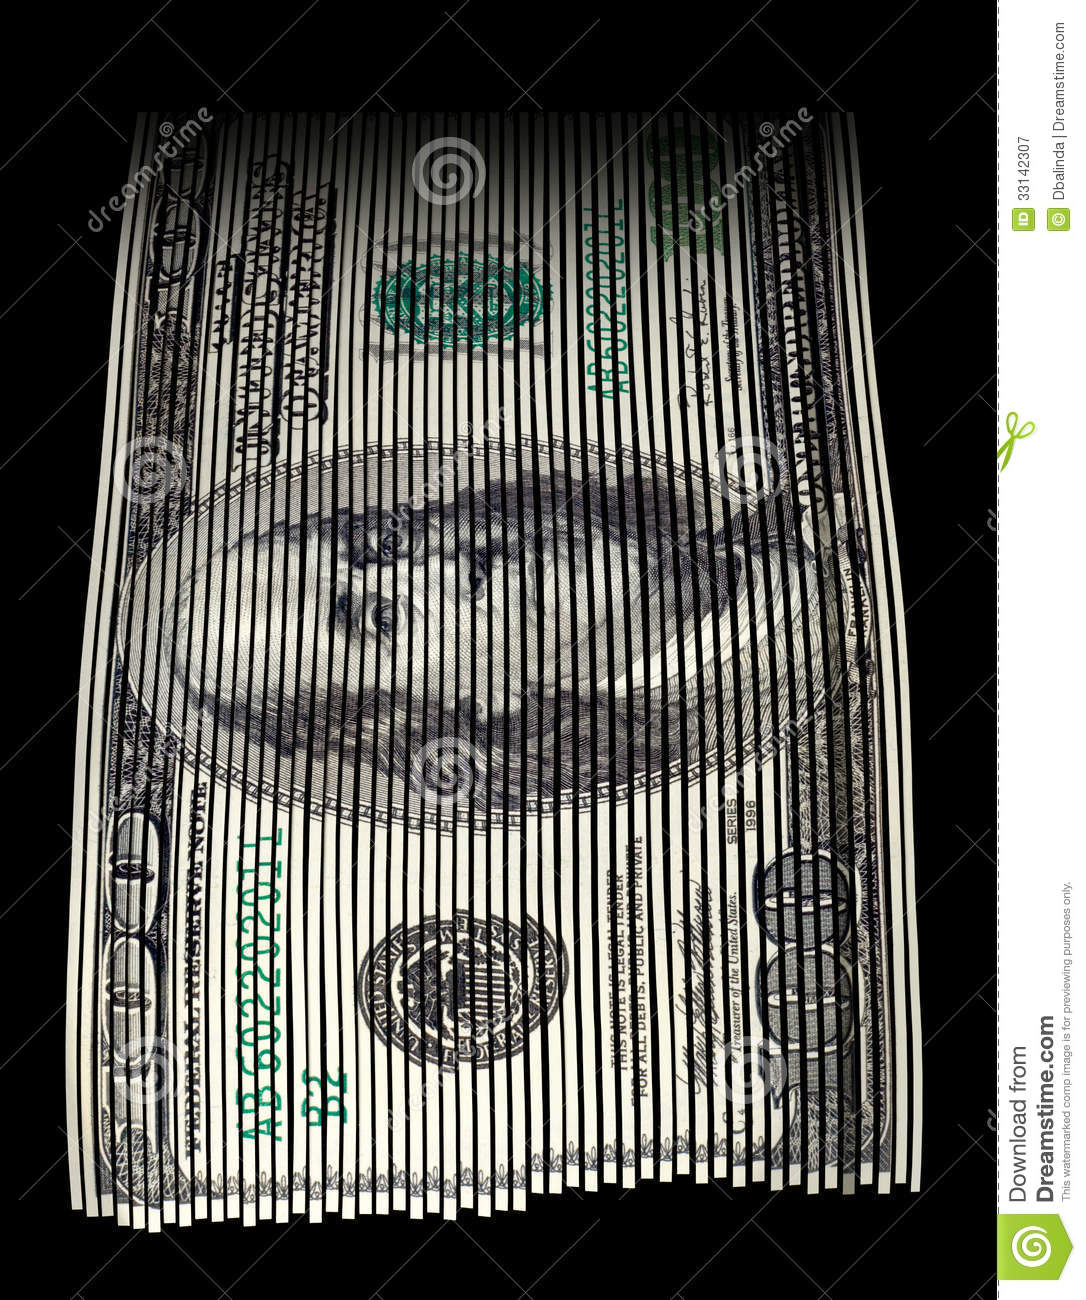 Shredded Us Hundred Dollar Bill On Black Background  Concept For Money